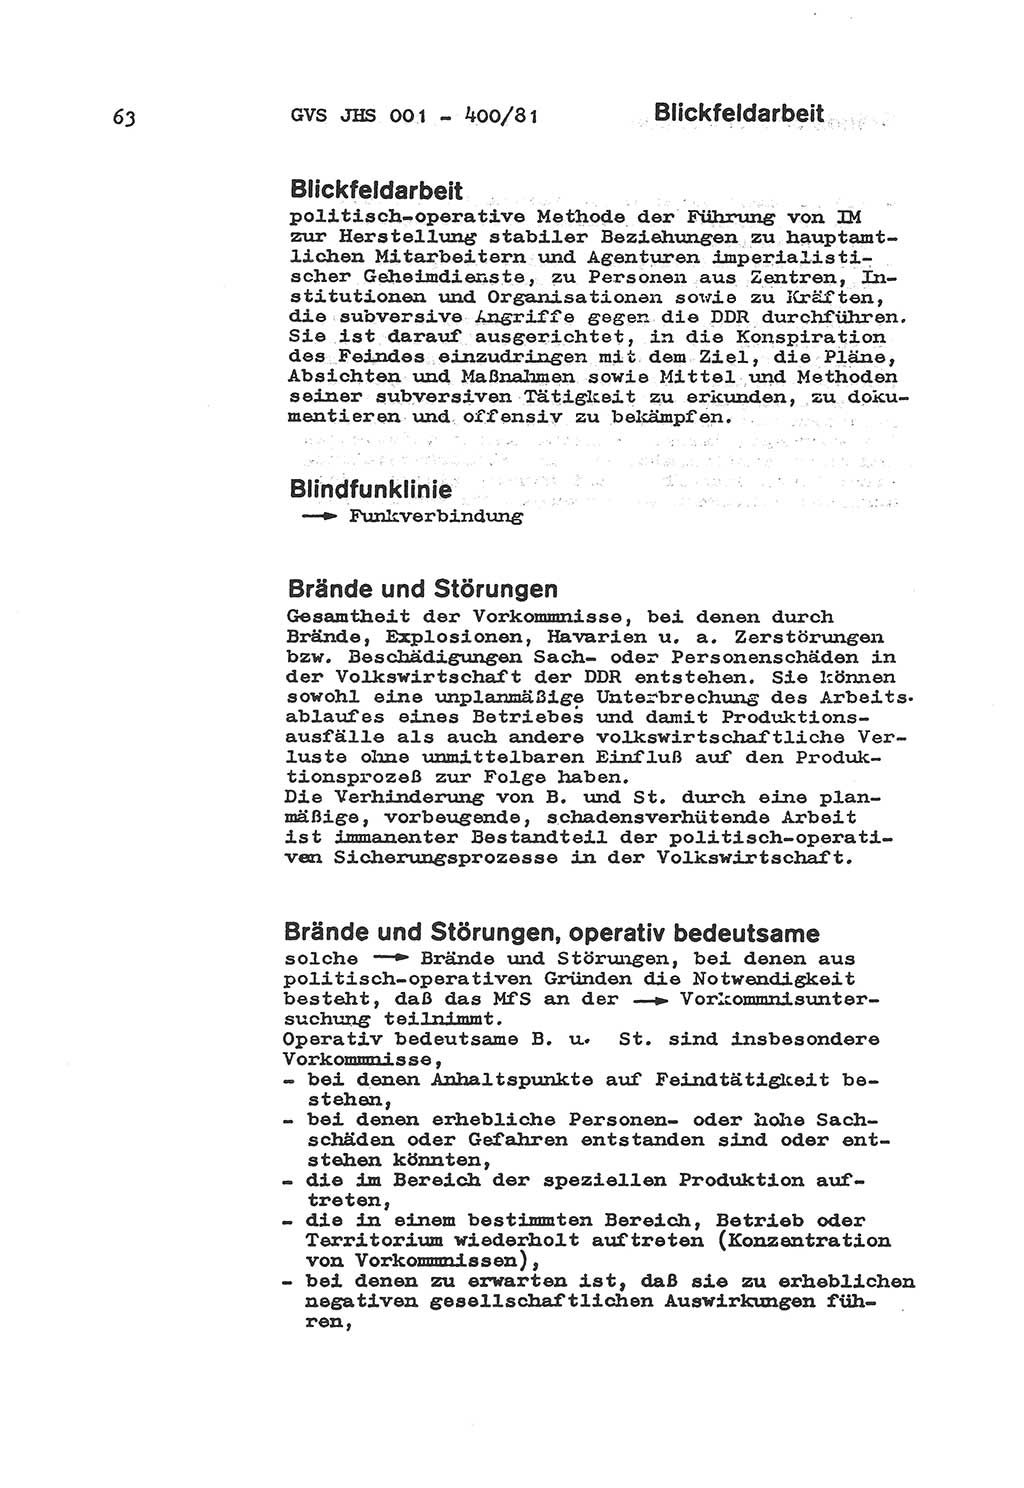 Wörterbuch der politisch-operativen Arbeit, Ministerium für Staatssicherheit (MfS) [Deutsche Demokratische Republik (DDR)], Juristische Hochschule (JHS), Geheime Verschlußsache (GVS) o001-400/81, Potsdam 1985, Blatt 63 (Wb. pol.-op. Arb. MfS DDR JHS GVS o001-400/81 1985, Bl. 63)